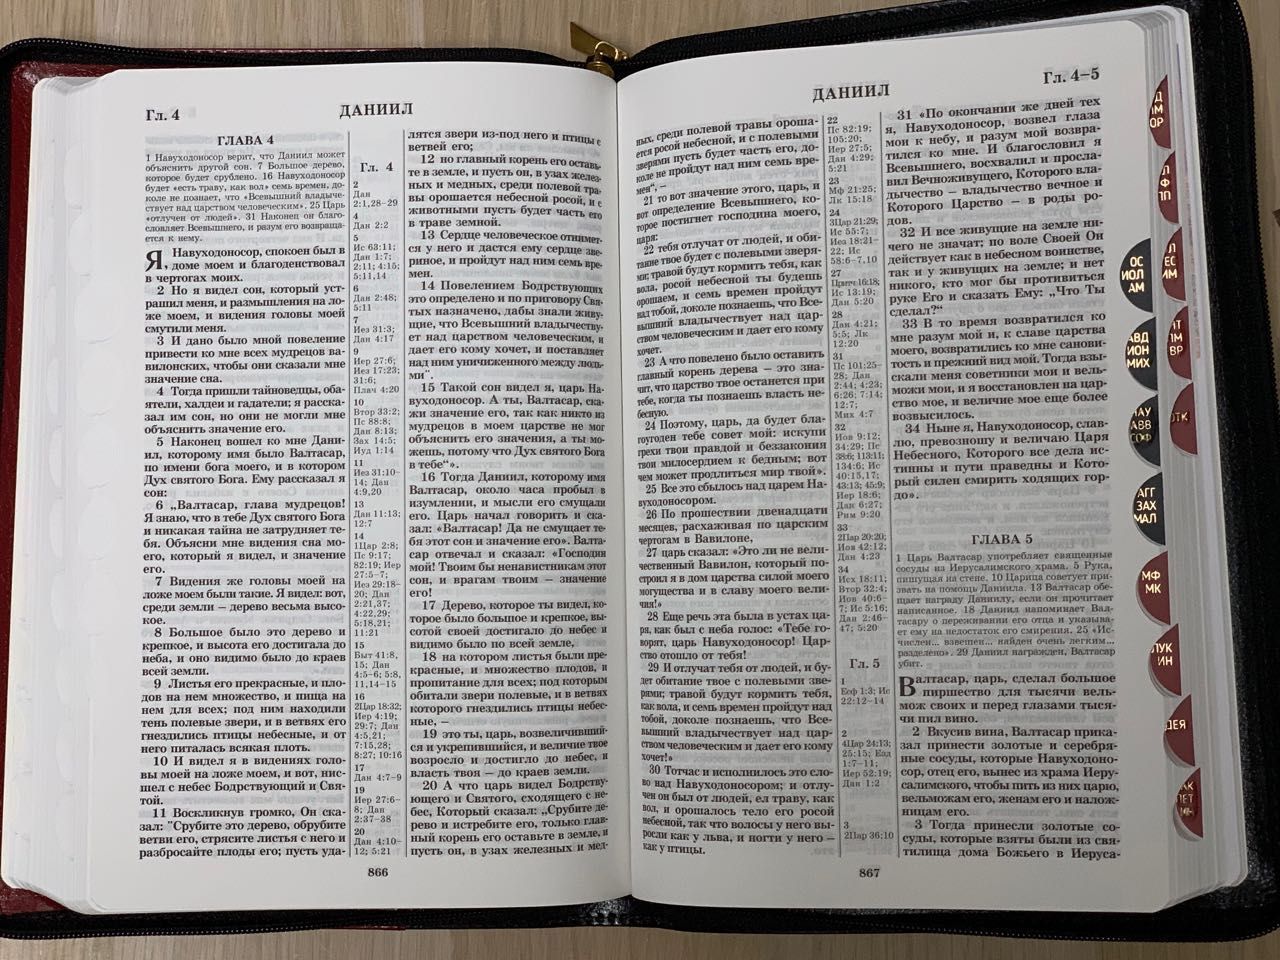 БИБЛИЯ 077zti формат, переплет из искусственной кожи на молнии с индексами, надпись золотом "Библия", цвет бордо металлик металлик, большой формат, 180*260 мм, цветные карты, крупный шрифт